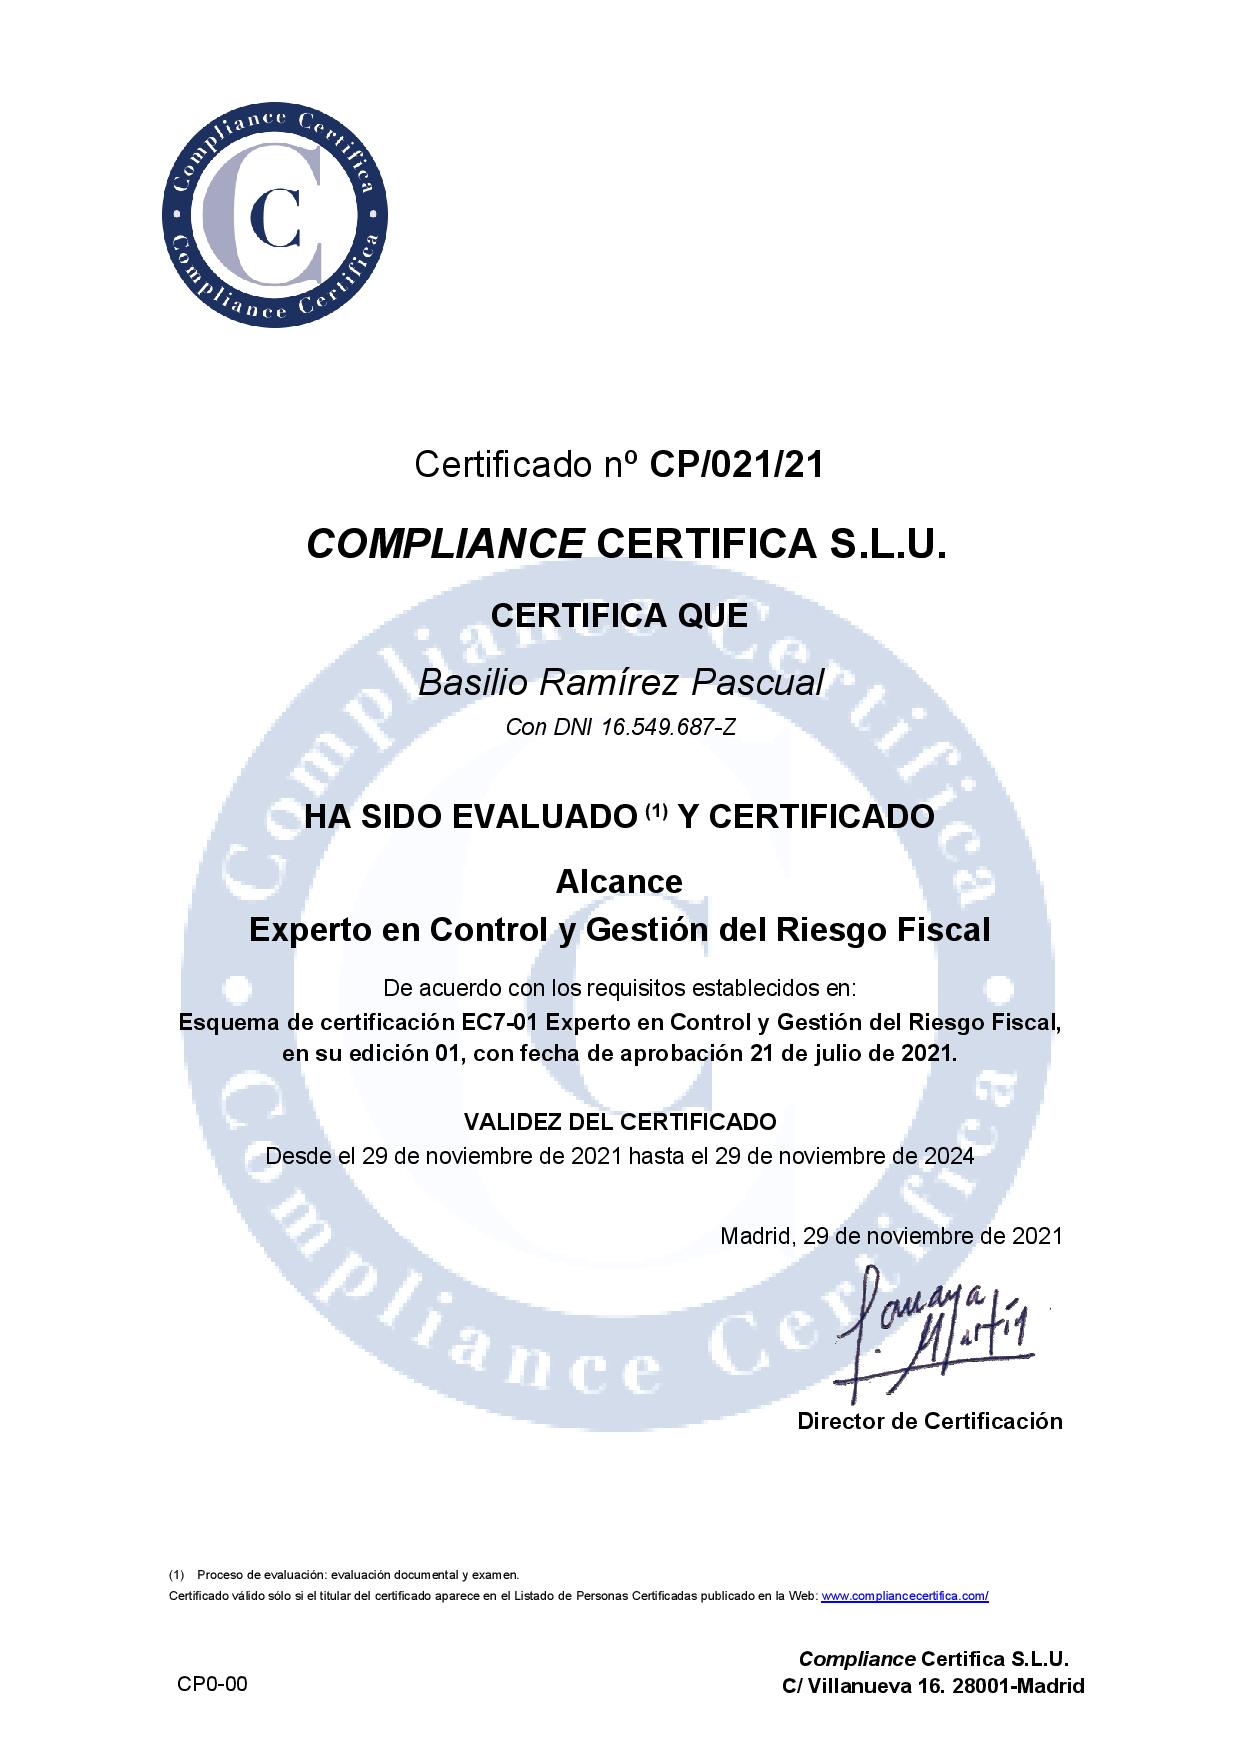 Certificado por el " Organismo de Certificación CCS.L.U." como Experto en Control y Gestión del Riesgo Fiscal con el número CP/21/021.